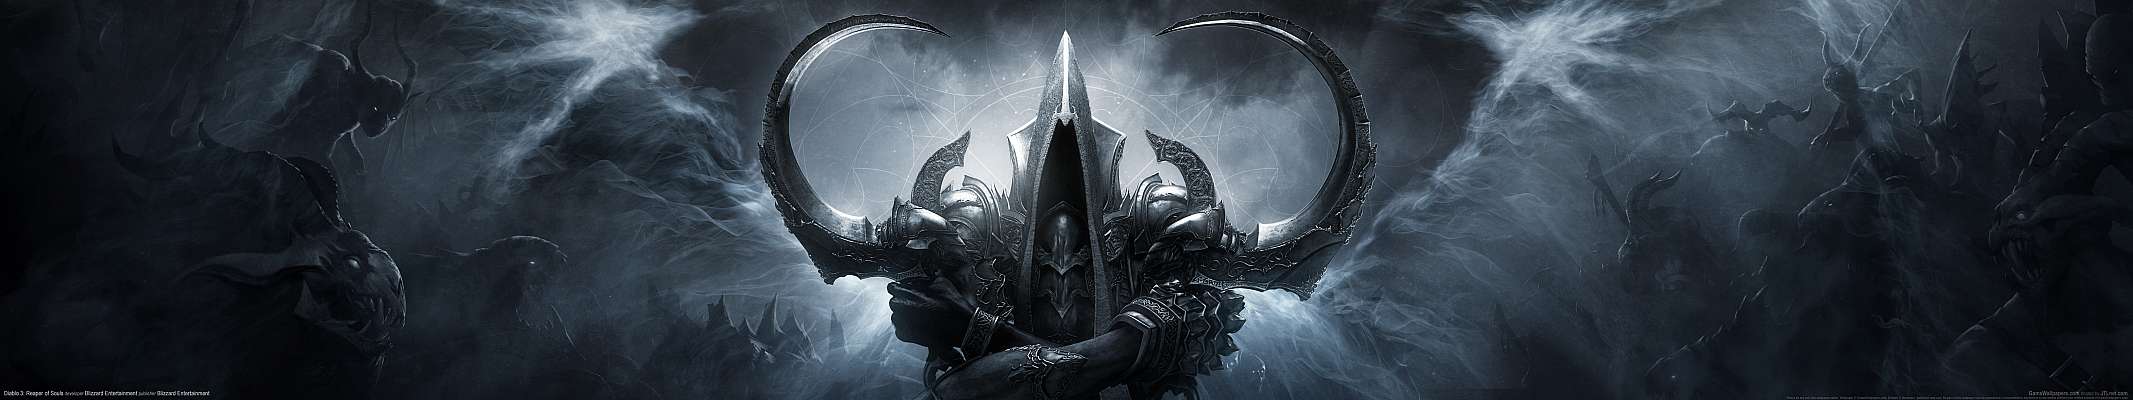 Diablo 3: Reaper of Souls triple screen achtergrond